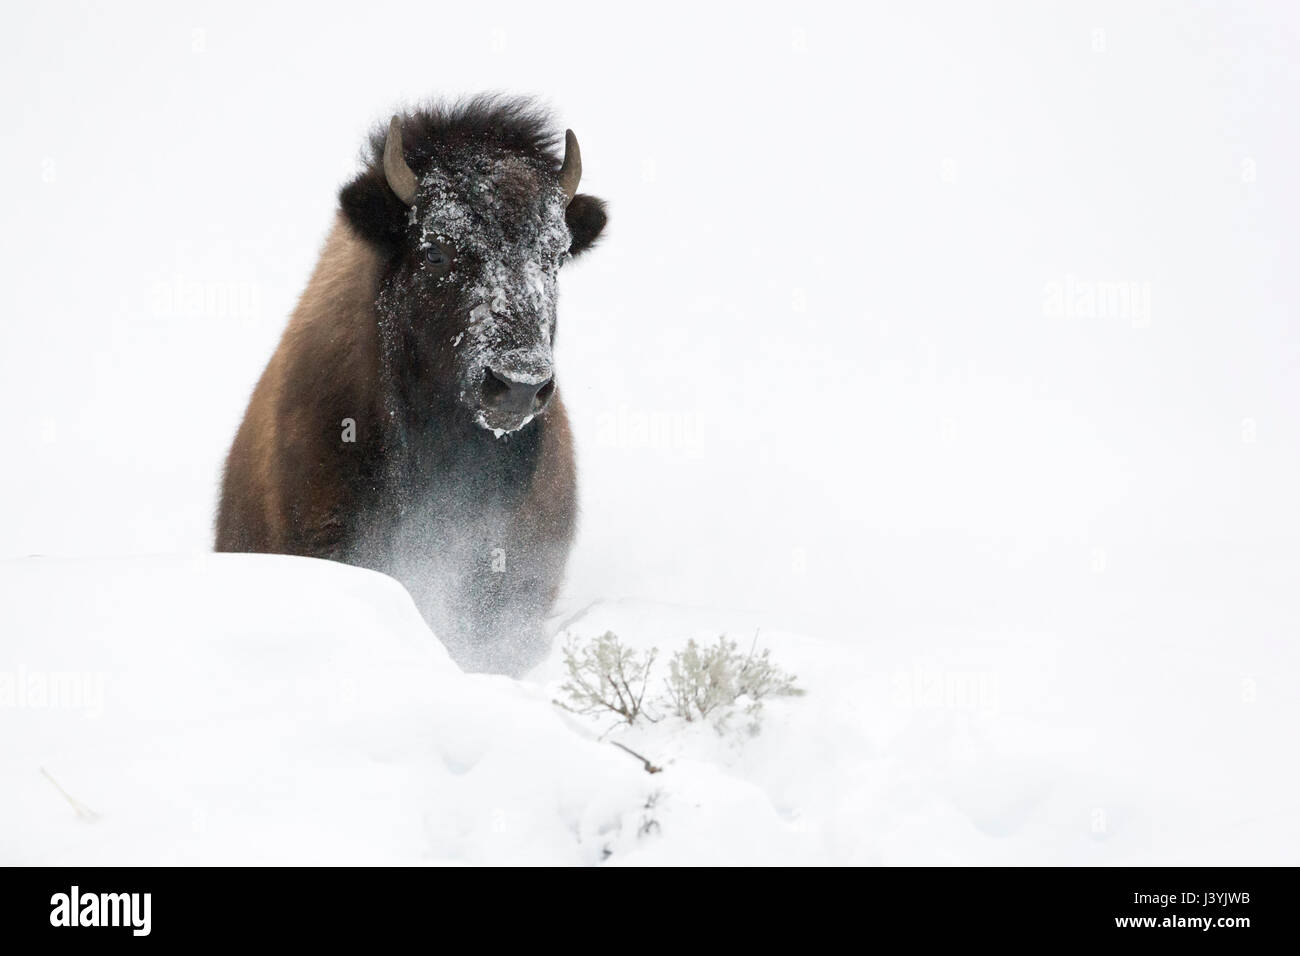 Bisonte americano (Bison bison ) en invierno, rompiendo a través de una pequeña colina de profunda nieve esponjosas, Fotografía frontal, el Parque Nacional de Yellowstone, WY, EE.UU. Foto de stock